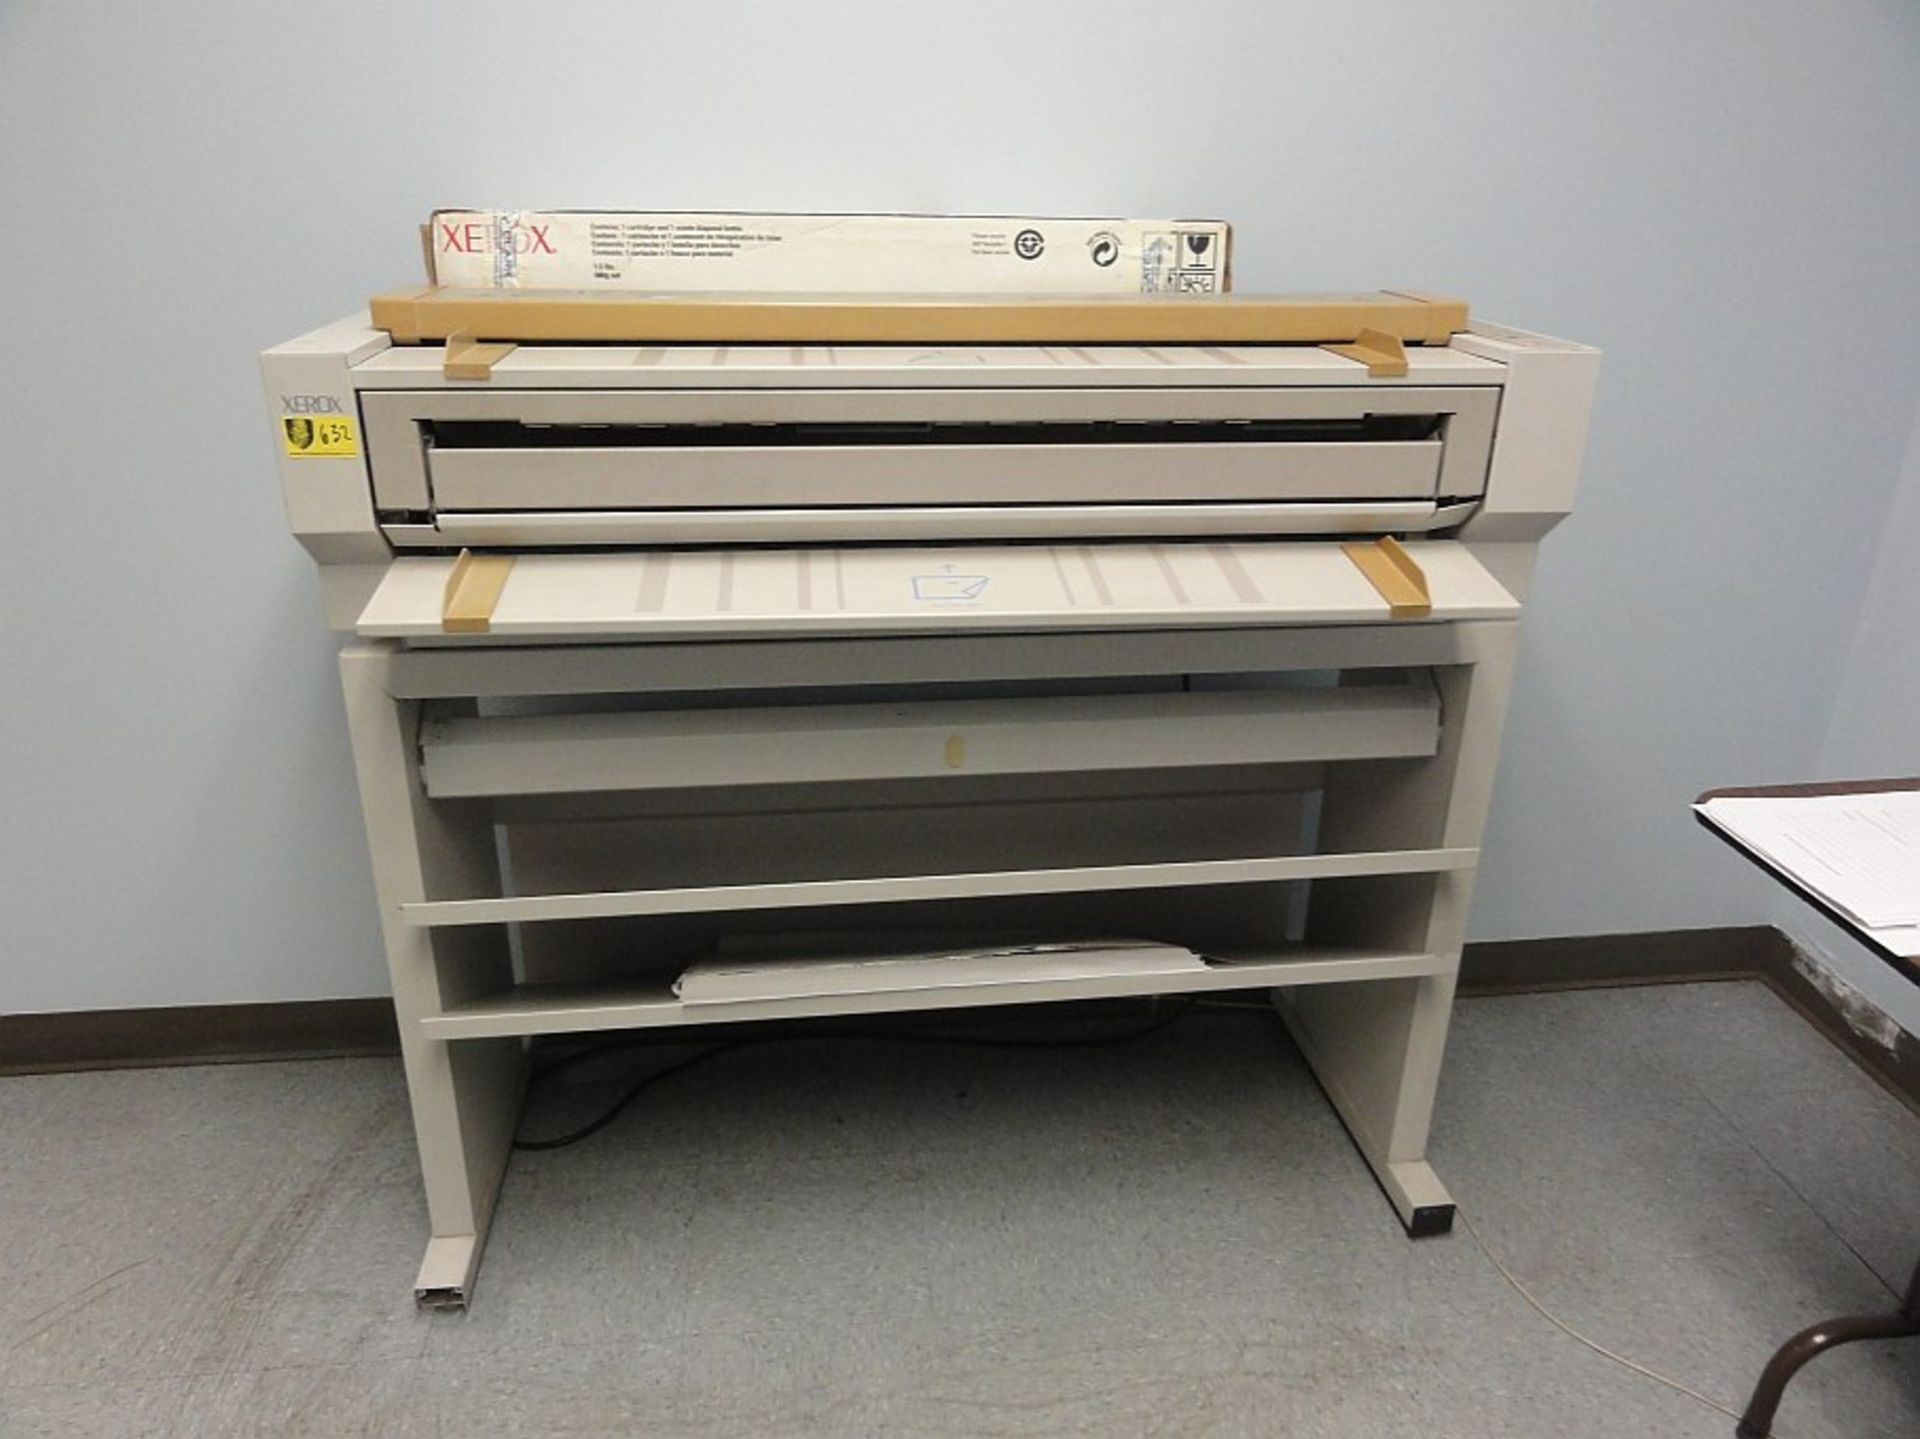 Xerox 2510 Copier, 38